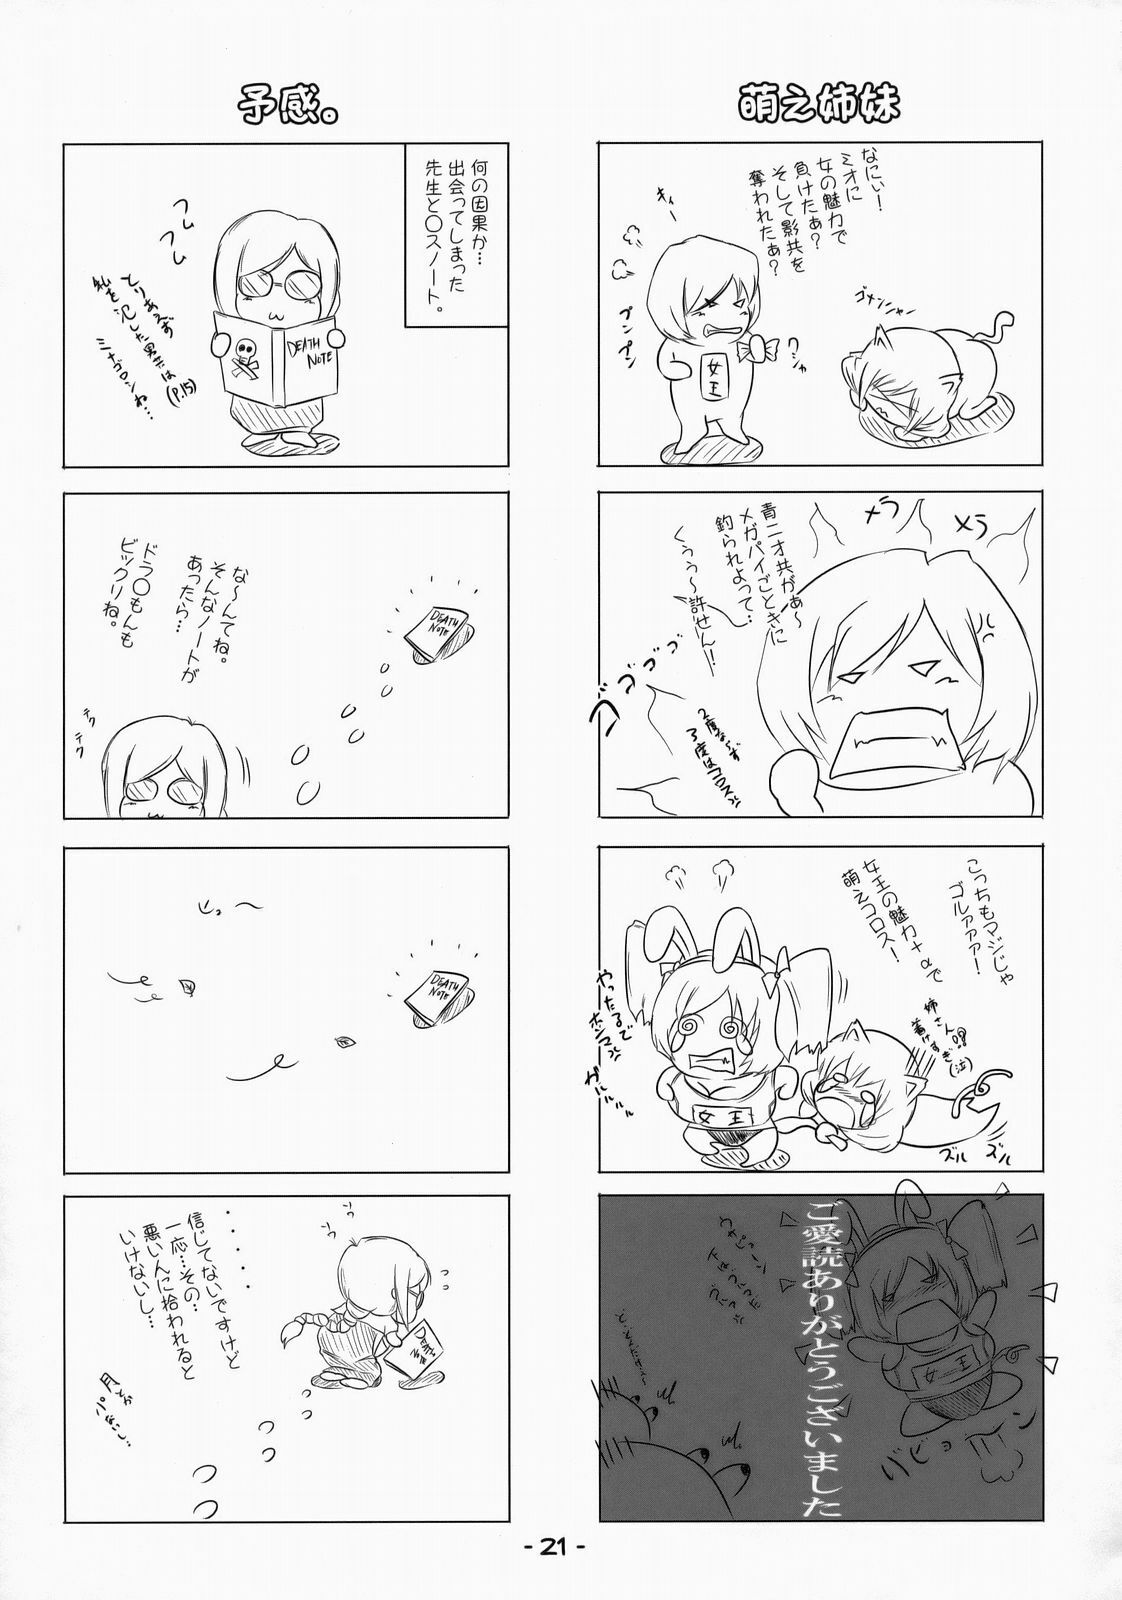 [eleven dice] Mio-friend- (Blue Dragon) page 20 full